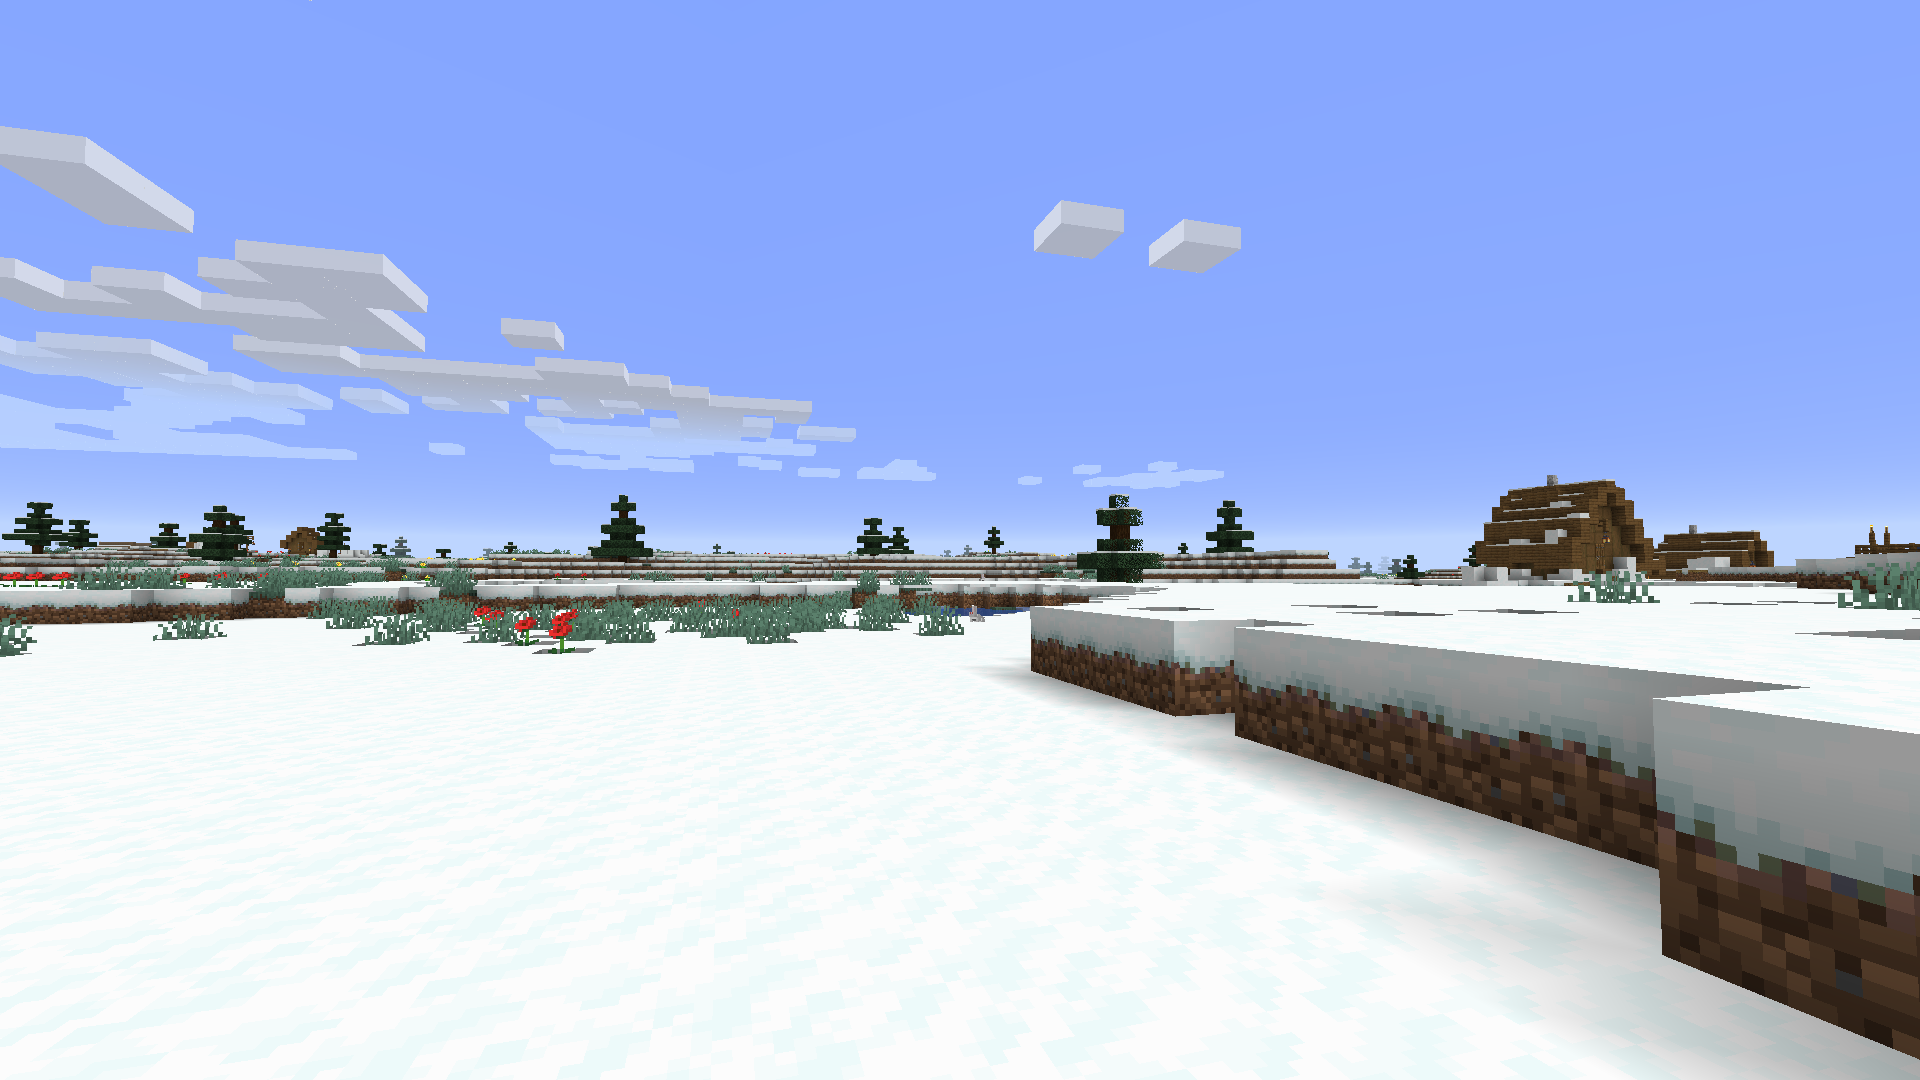 积雪的平原 Minecraft Wiki 最详细的我的世界百科